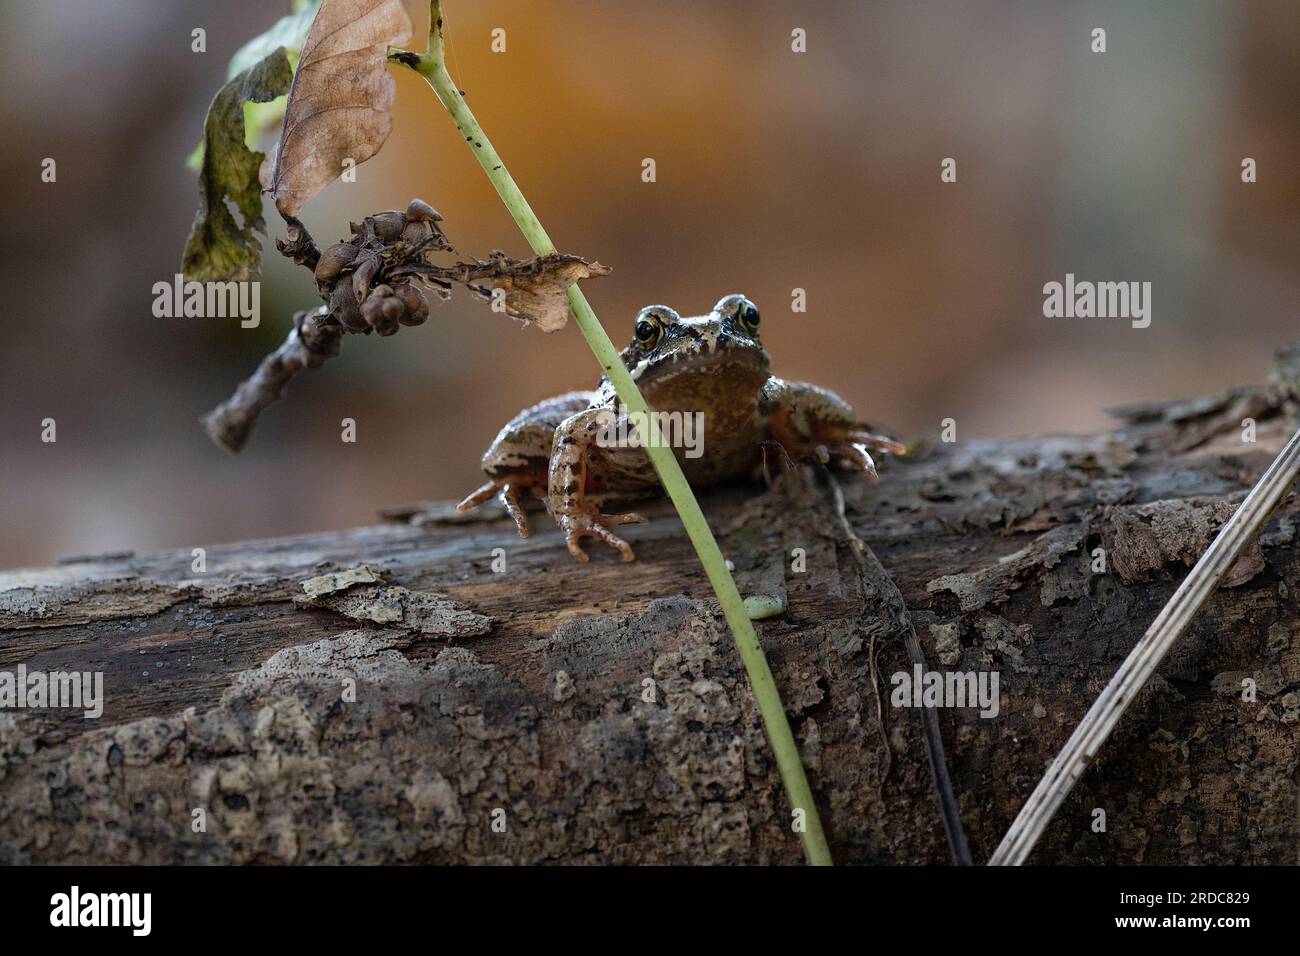 Une grenouille brune commune européenne, rana temporaria, assise sur une bûche derrière une petite branche regardant la caméra Banque D'Images